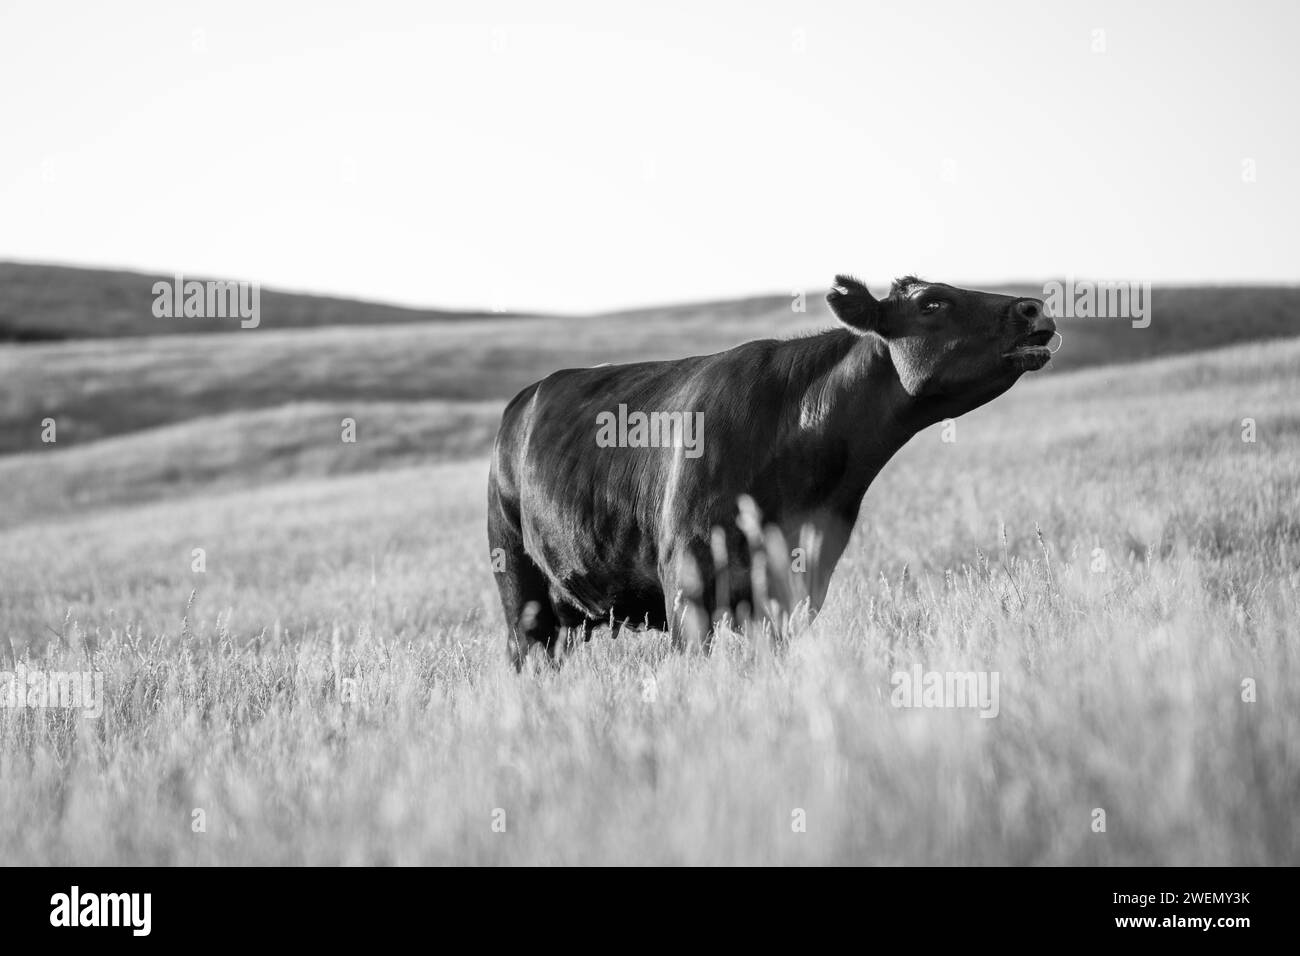 Régénératif Stud Angus, wagyu, gris Murray, vaches laitières et bovins et taureaux paissant sur l'herbe et le pâturage dans un champ. Les animaux sont biologiques et libres r Banque D'Images